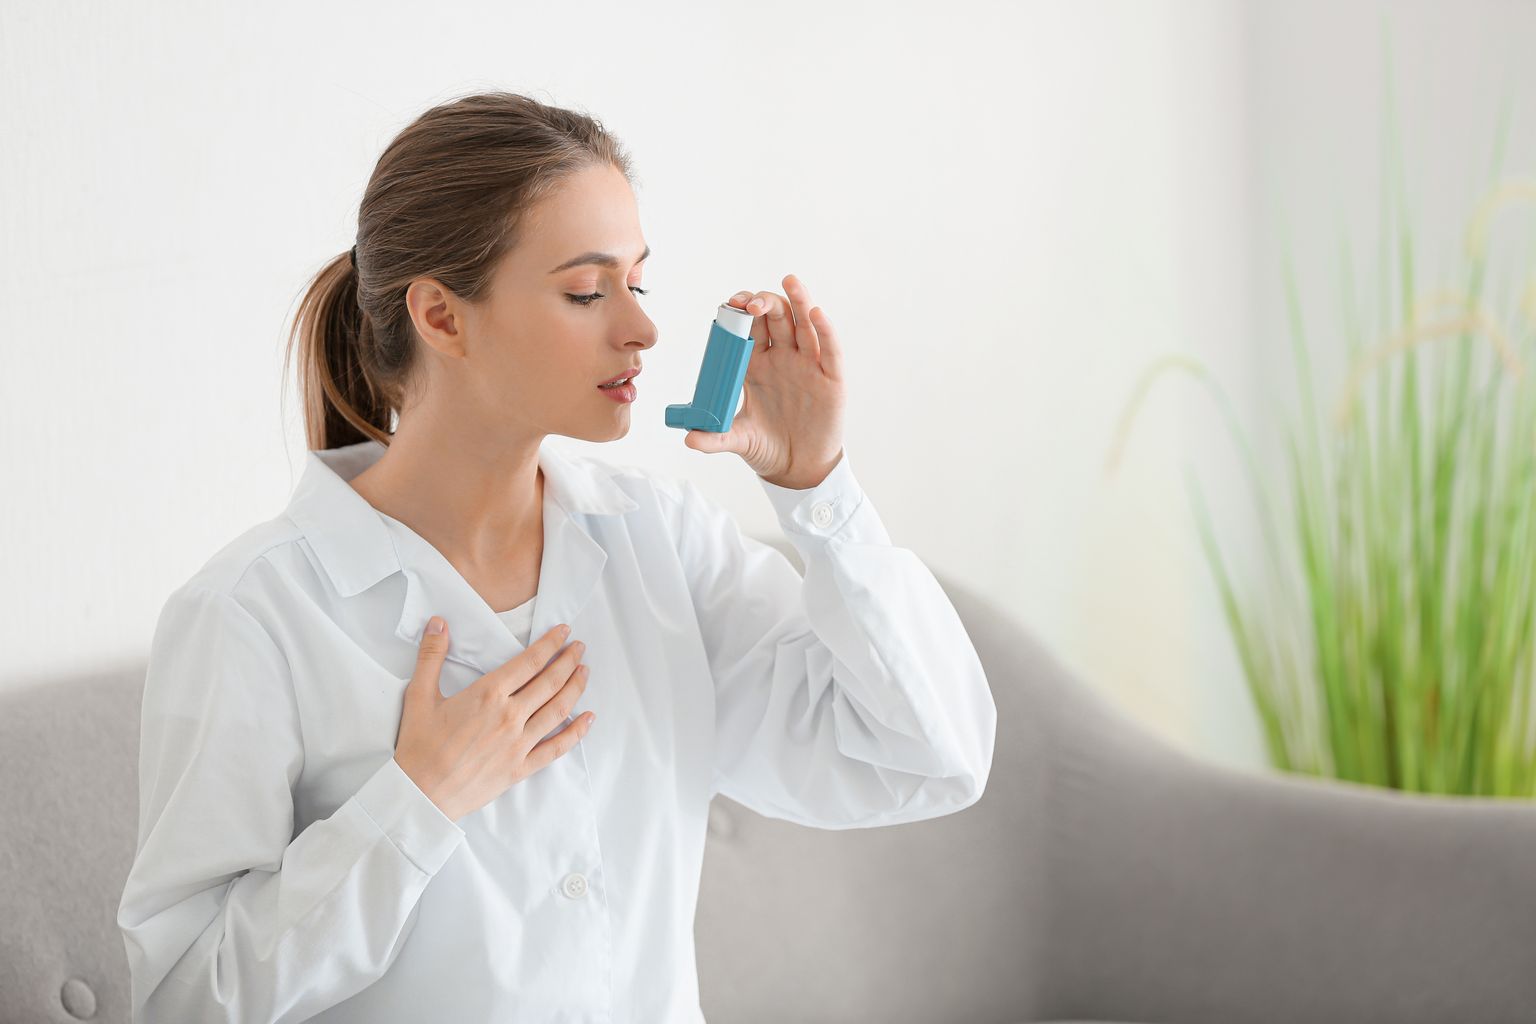 Проблемы с поставкой одного из самых популярных преператов от астмы могут продиться до середины января.